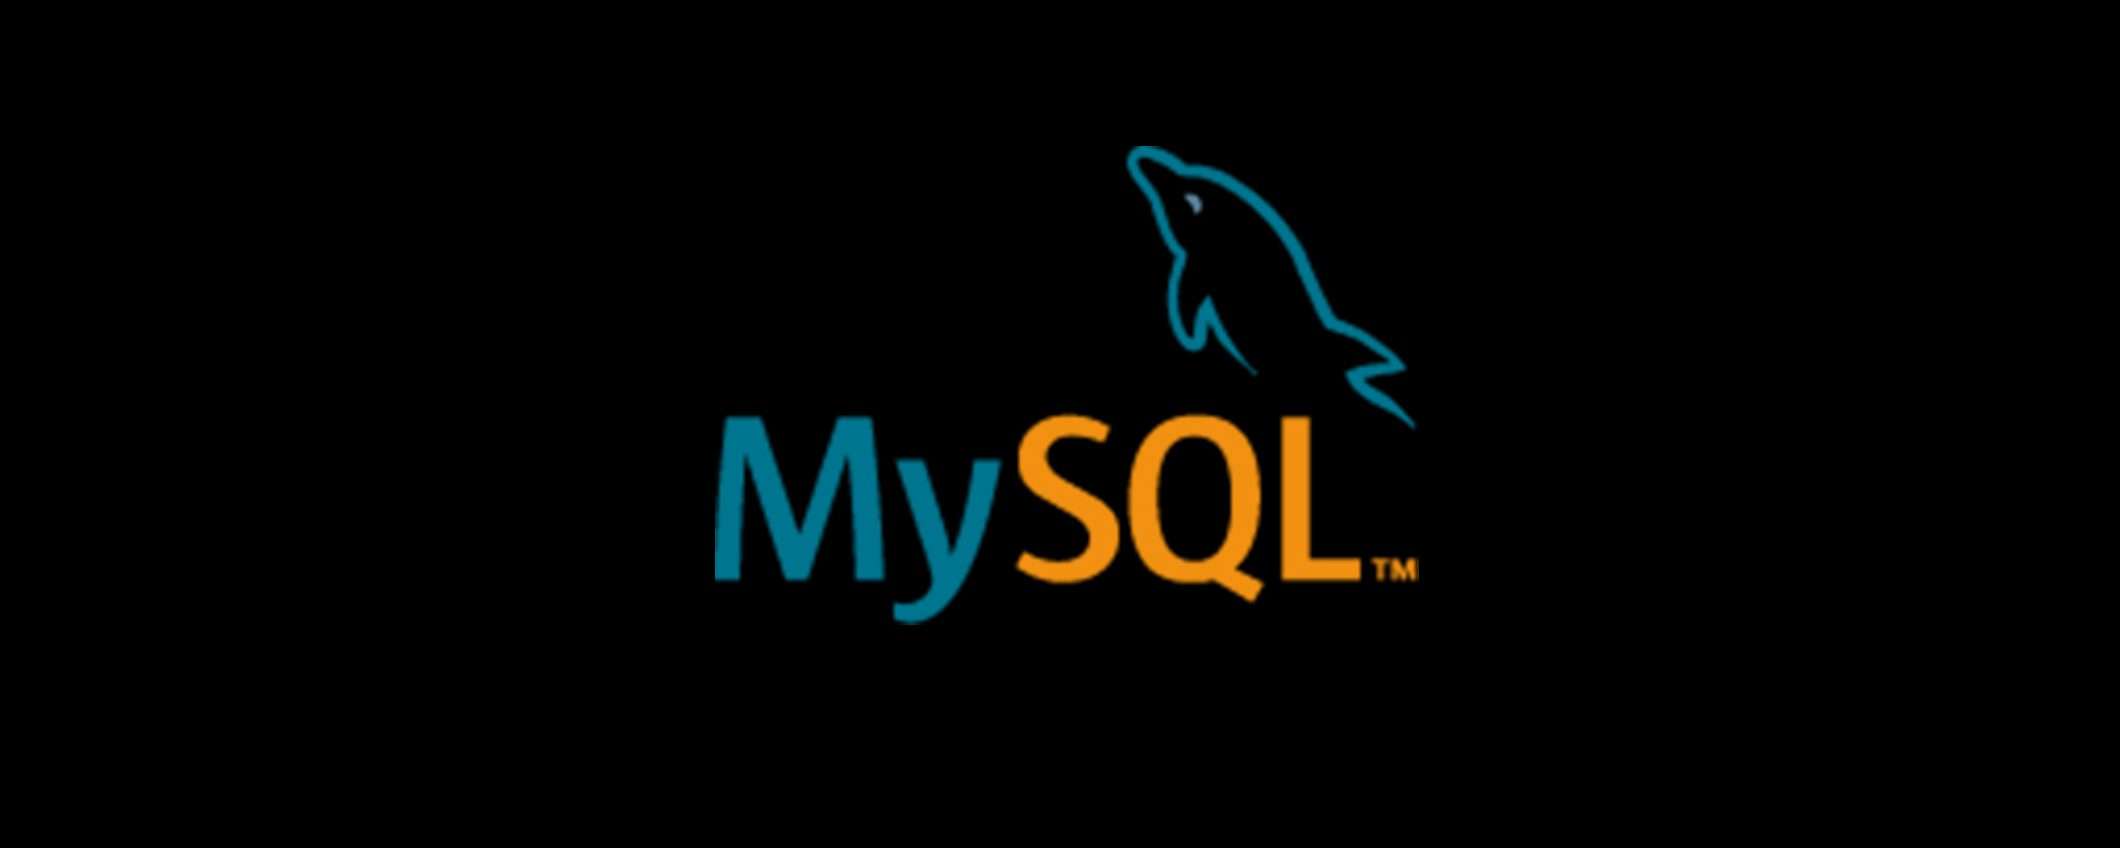 Oltre 3,6 milioni di server MySQL esposti su Internet